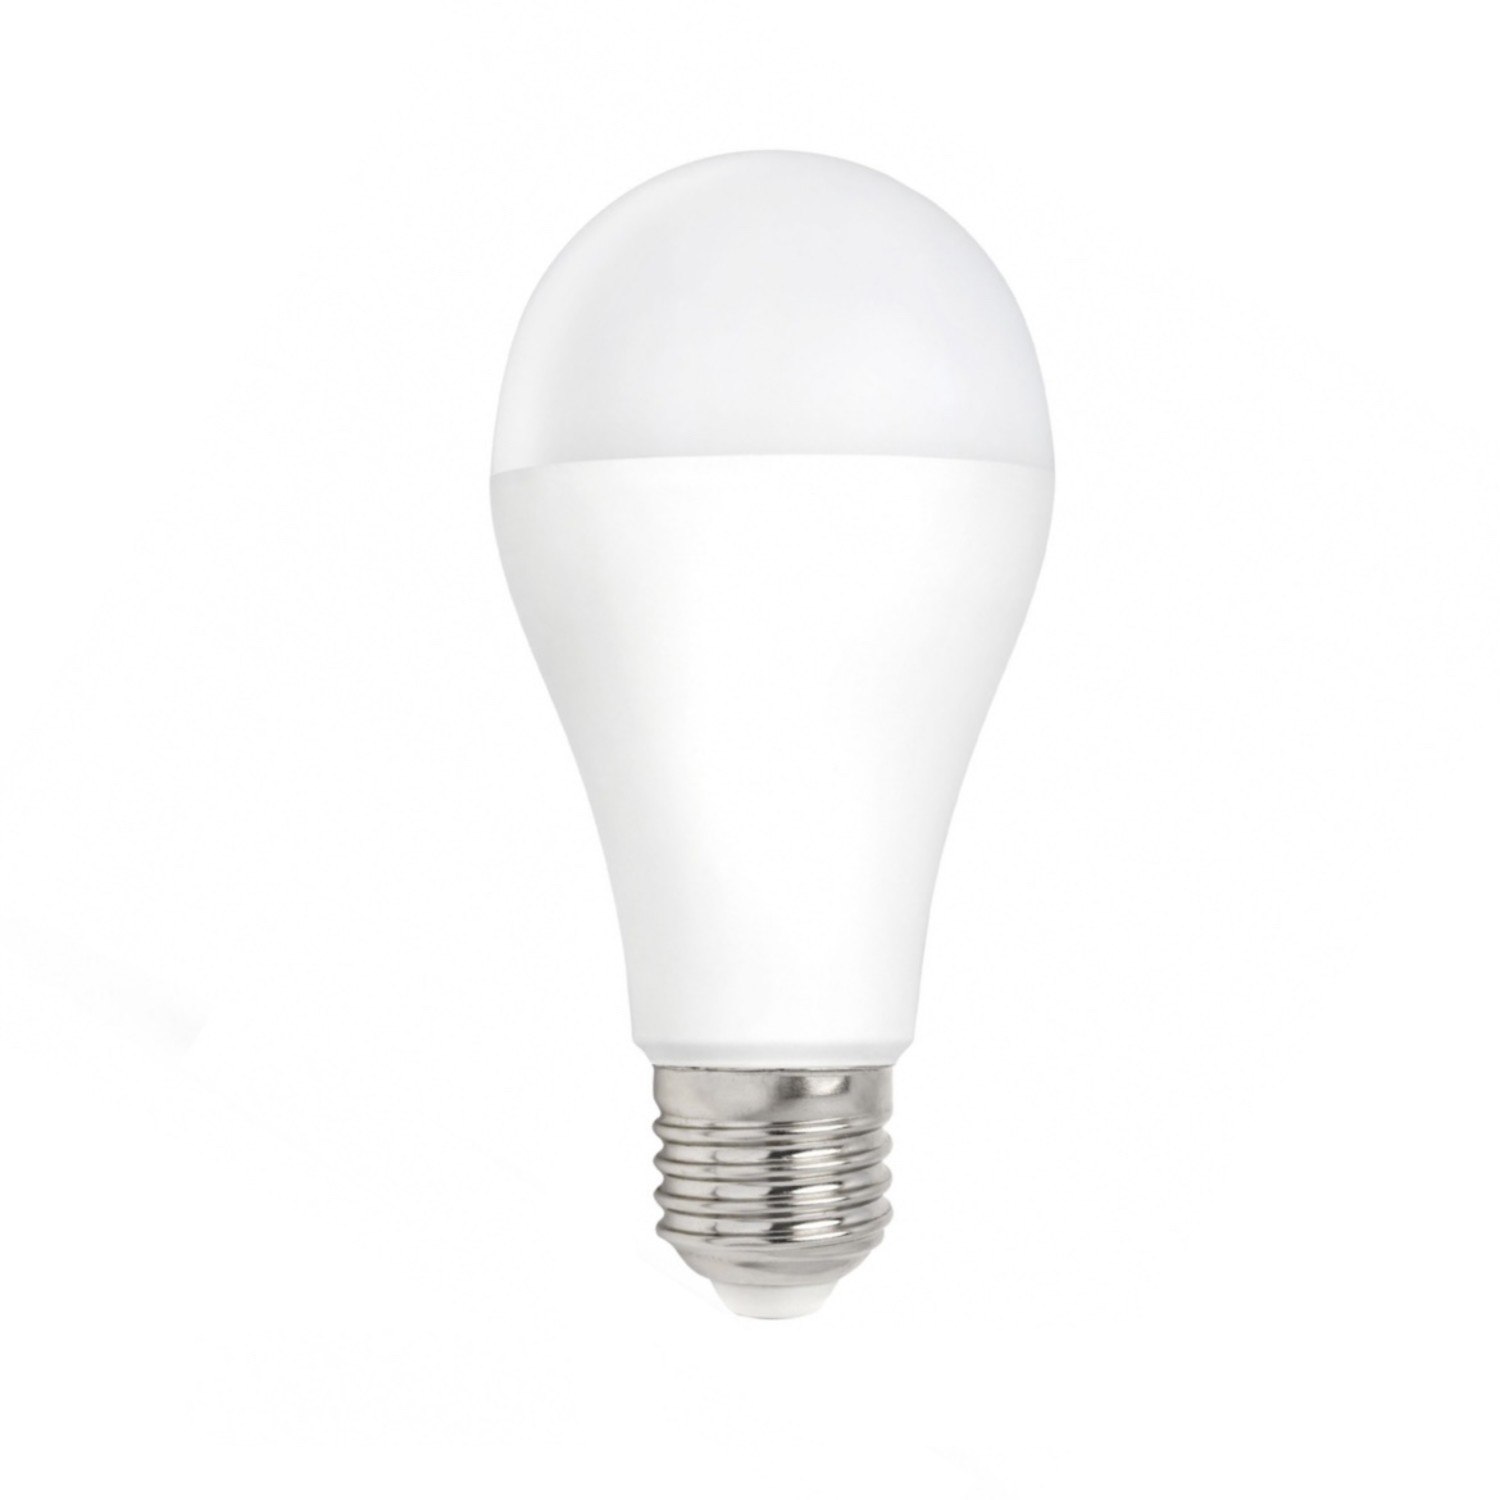 LED Lamp - E27 fitting - 15W vervangt 101W - Helder wit 4000K - Ledlichtdiscounter.nl